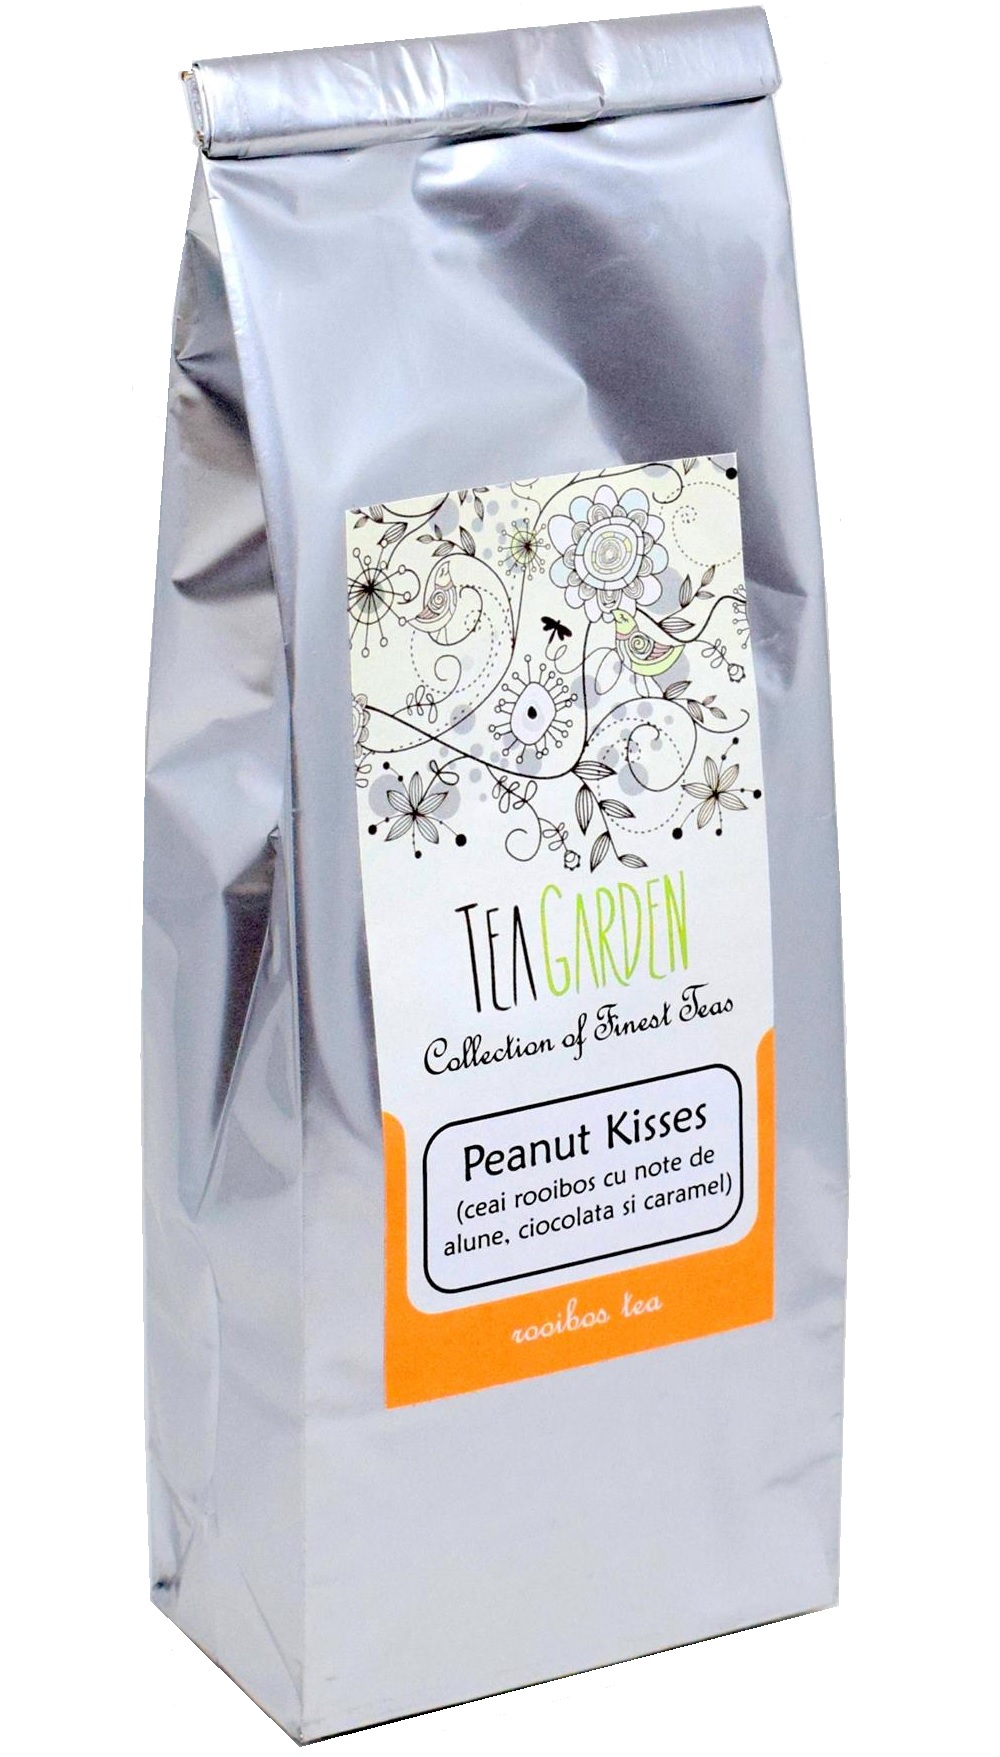 Ceai Peanut Kisses 100 gr - Tea Garden